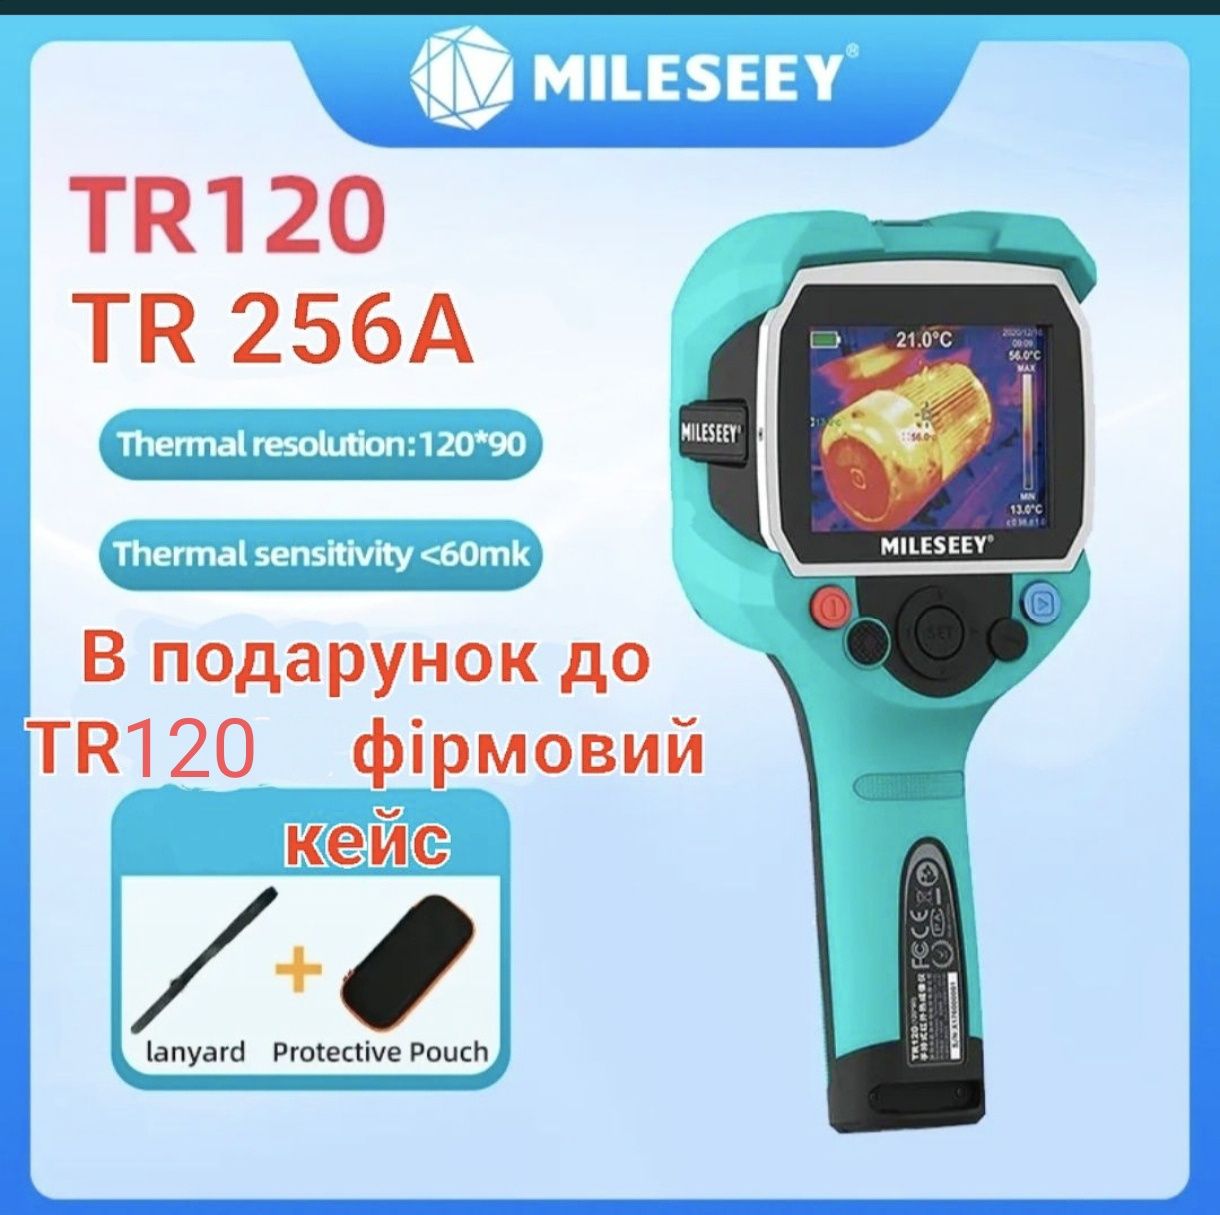 Тепловізор Mileseey TR120, TR256A